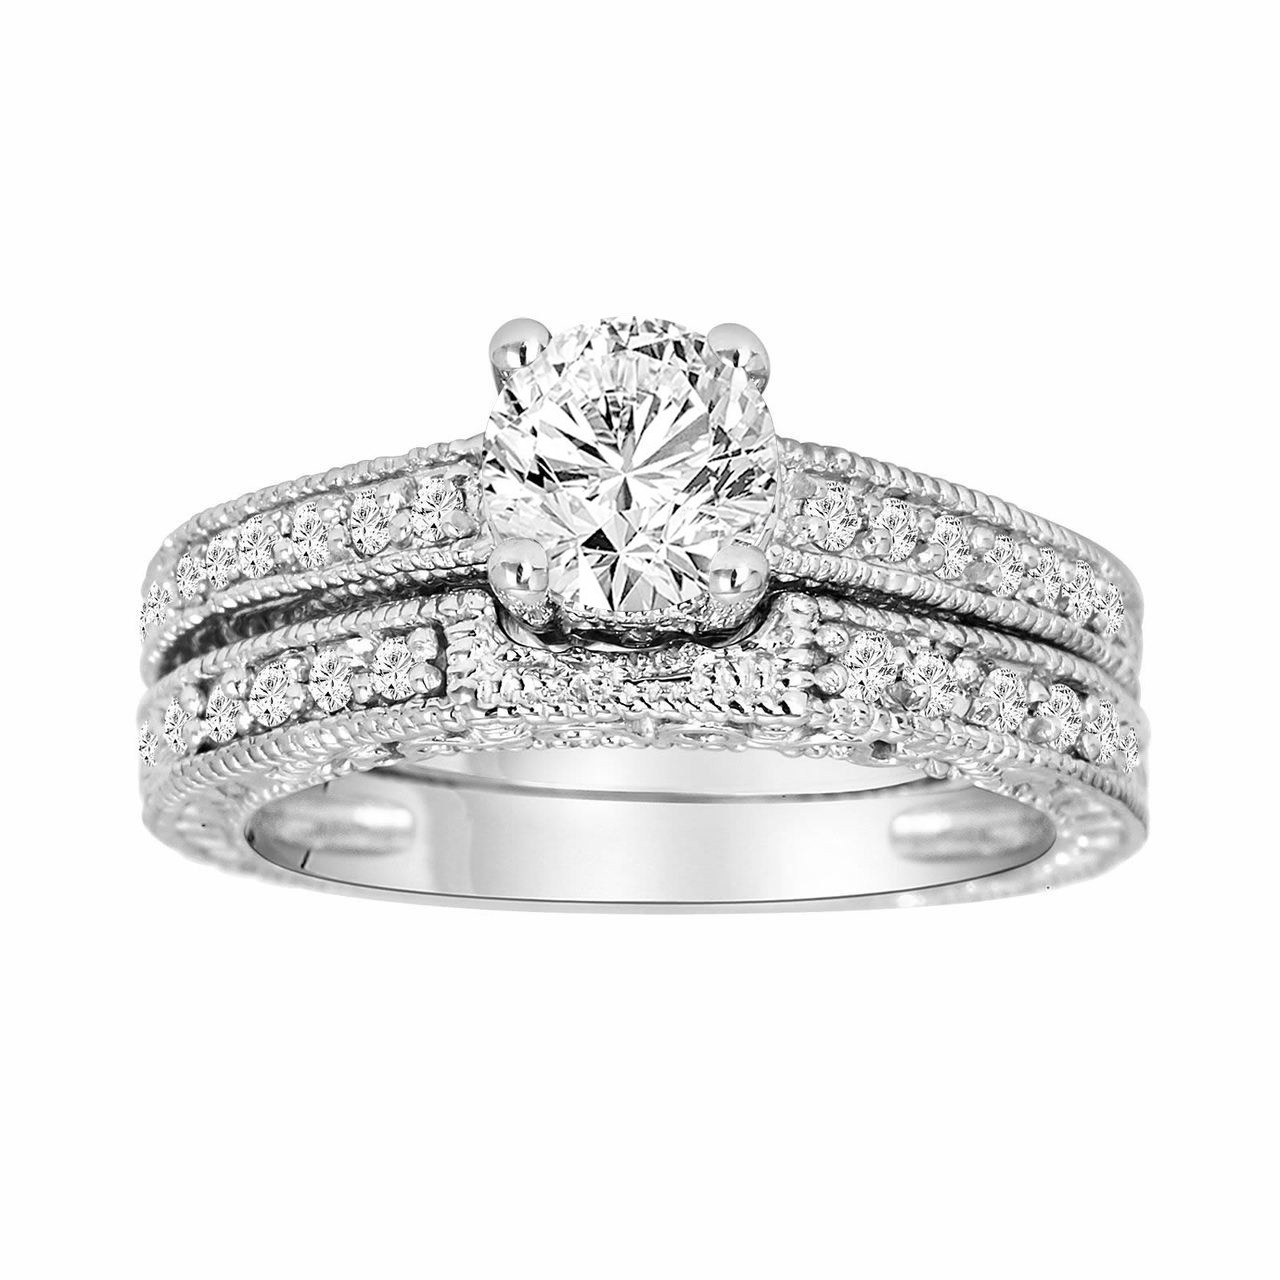 Vintage Style Wedding Band
 Diamond Engagement Ring And Wedding Band Sets 14K White